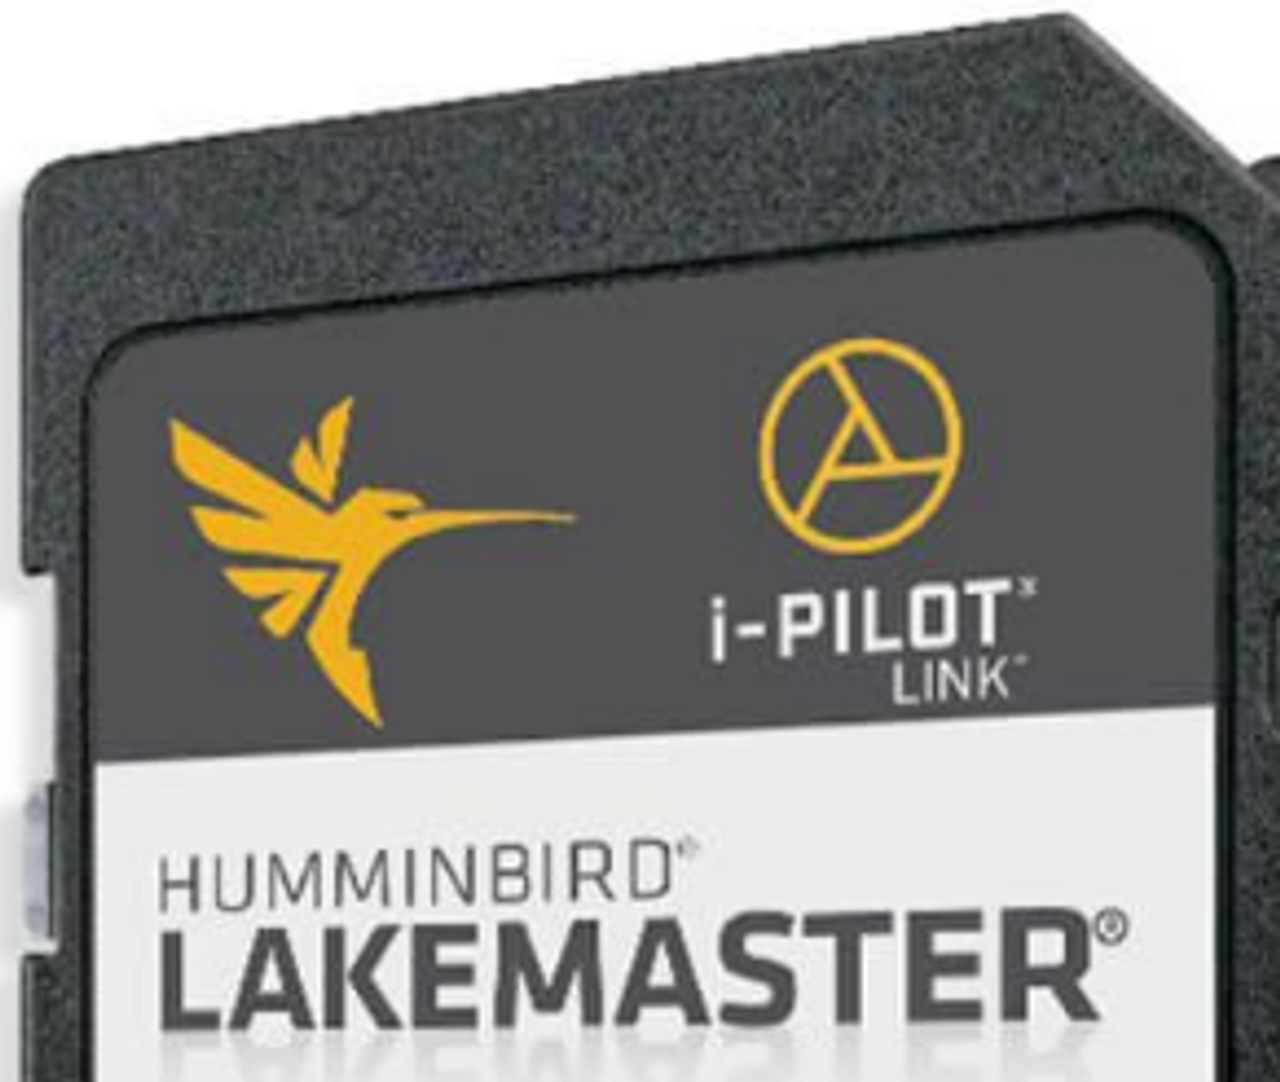 Humminbird Lakemaster Chips - GoIceFish